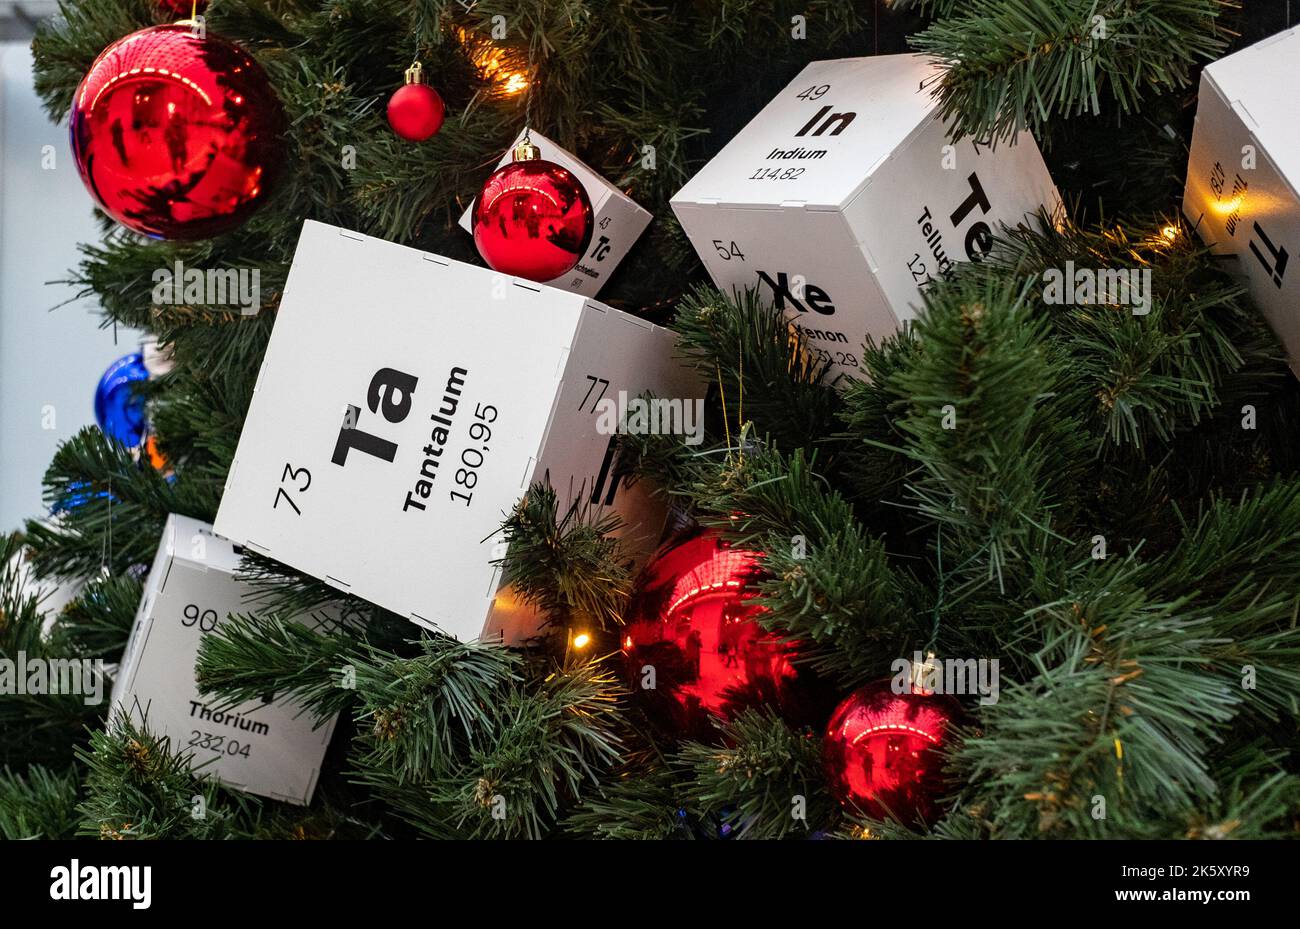 8. Dezember 2021, Sotschi, Russland. Der Papierwürfel mit dem Bild des Tantalums - das Element des Periodensystems Mendelejews auf dem Weihnachtsbaum. Stockfoto